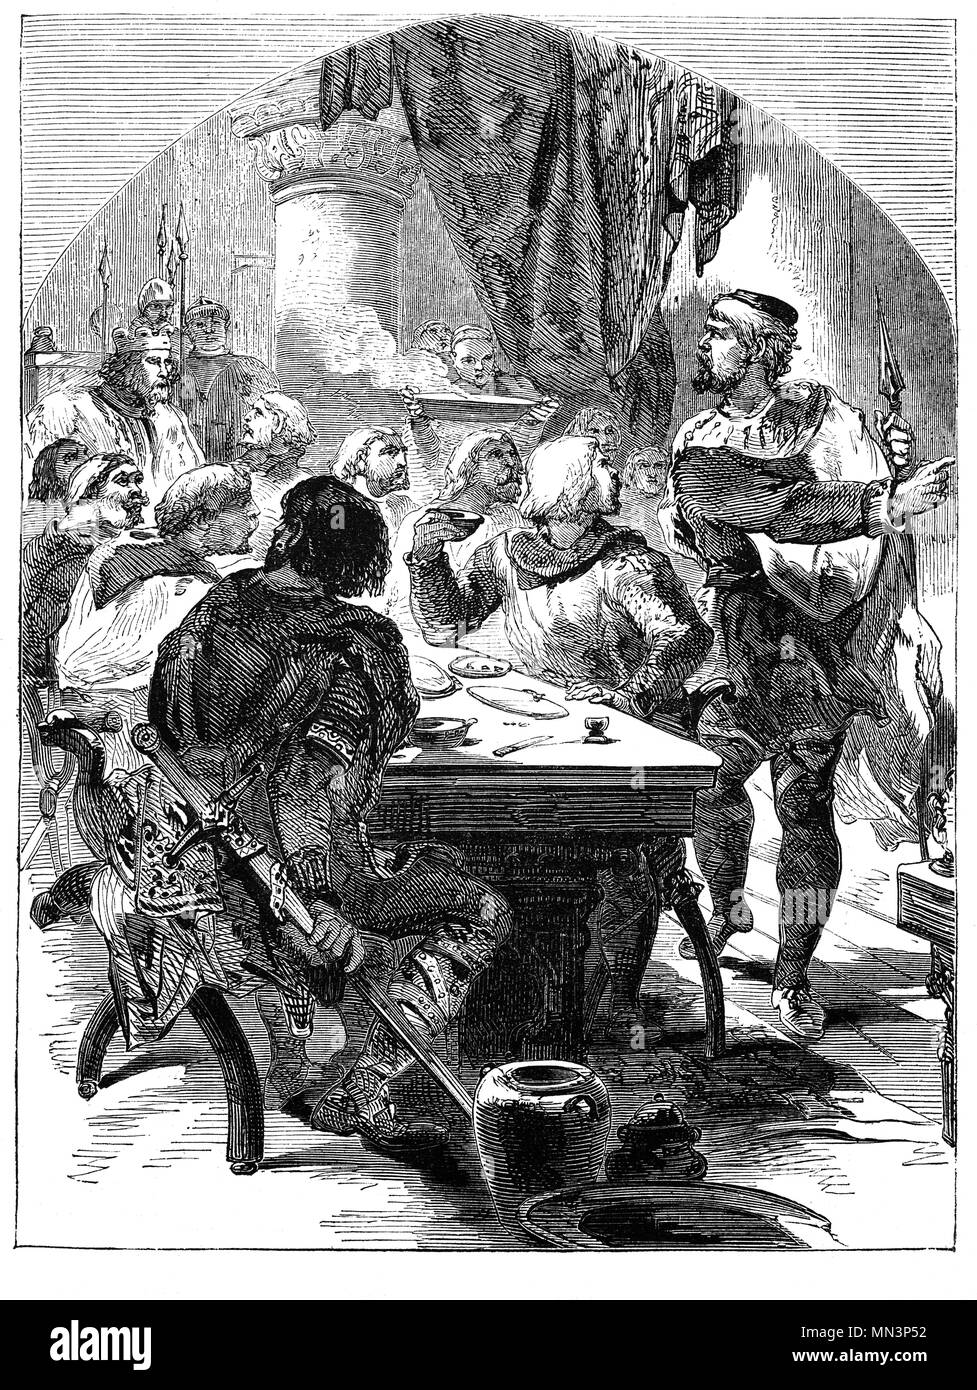 Harold Baar "Chez Boultan & Fils" (1022-1066), souvent appelé Harold II, fut le dernier roi de l'Angleterre anglo-saxonne. Harold régna de 6 janvier 1066 jusqu'à sa mort à la bataille de Hastings. Il a assisté à un banquet le 14 octobre 1066, lorsqu'il reçut la nouvelle de l'invasion normande dirigée par William le Conquérant qui a marqué la fin de la règle anglo-saxonne sur l'Angleterre. Banque D'Images